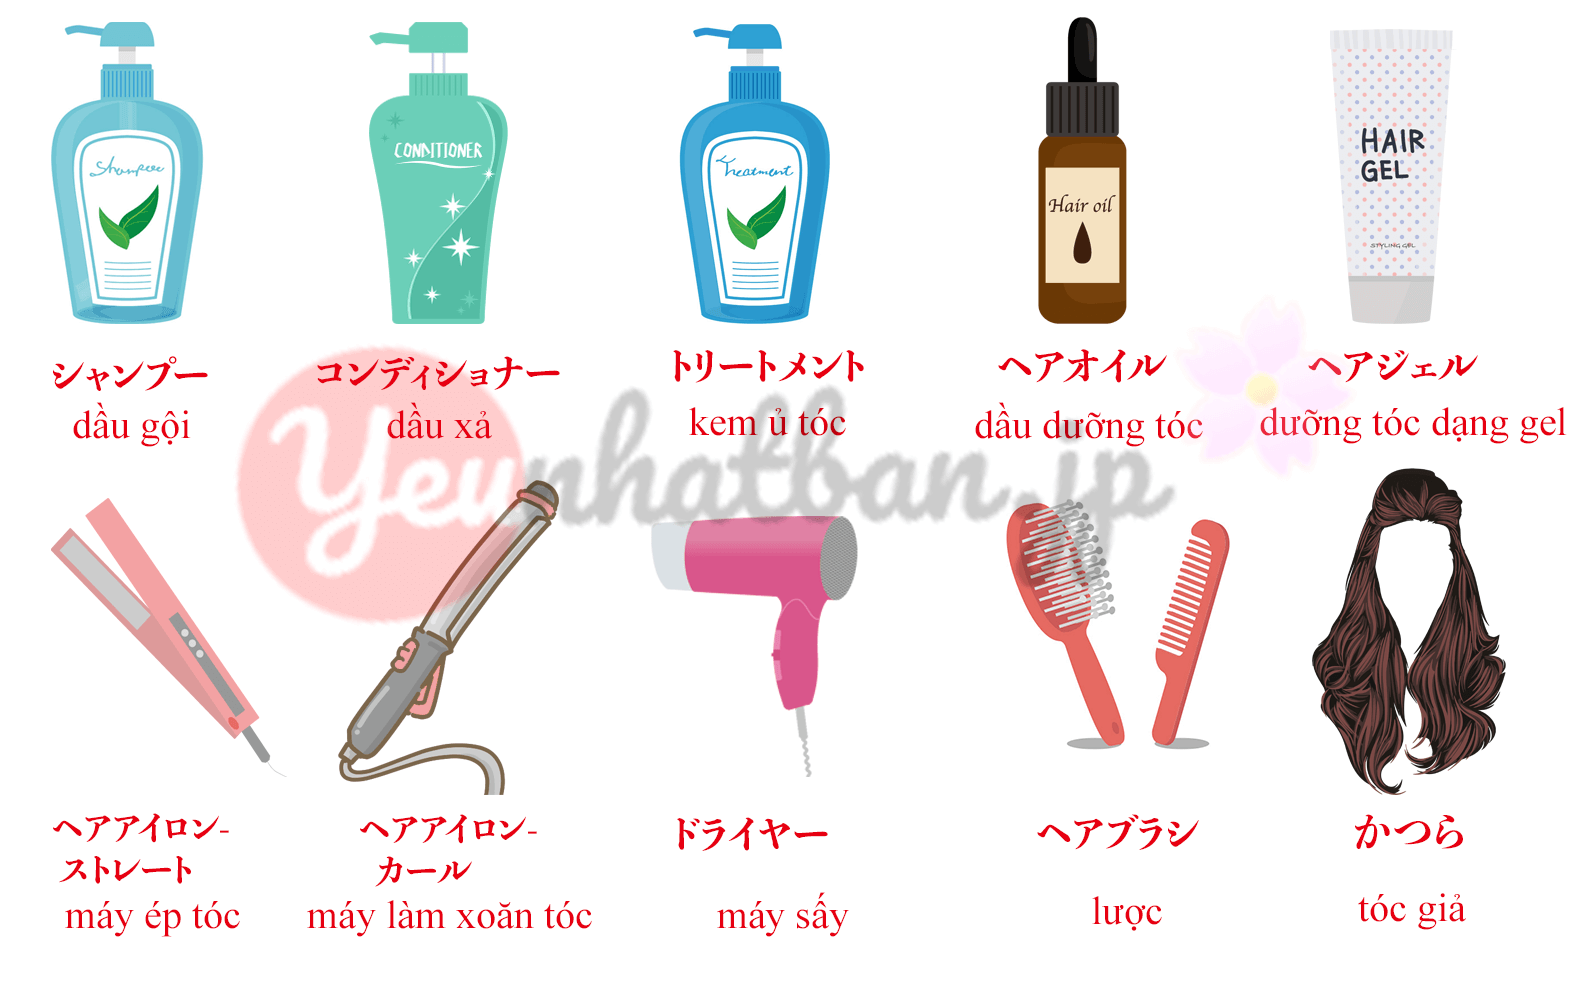 Mở rộng vốn từ vựng về tóc trong tiếng Nhật sẽ giúp bạn trở nên thành thạo hơn trong lĩnh vực này. Hãy cùng xem hình ảnh liên quan để khám phá ra một số từ vựng quan trọng và chuyên ngành liên quan đến tóc trong tiếng Nhật, để nâng cao vốn từ và hiểu được cách sử dụng chúng.